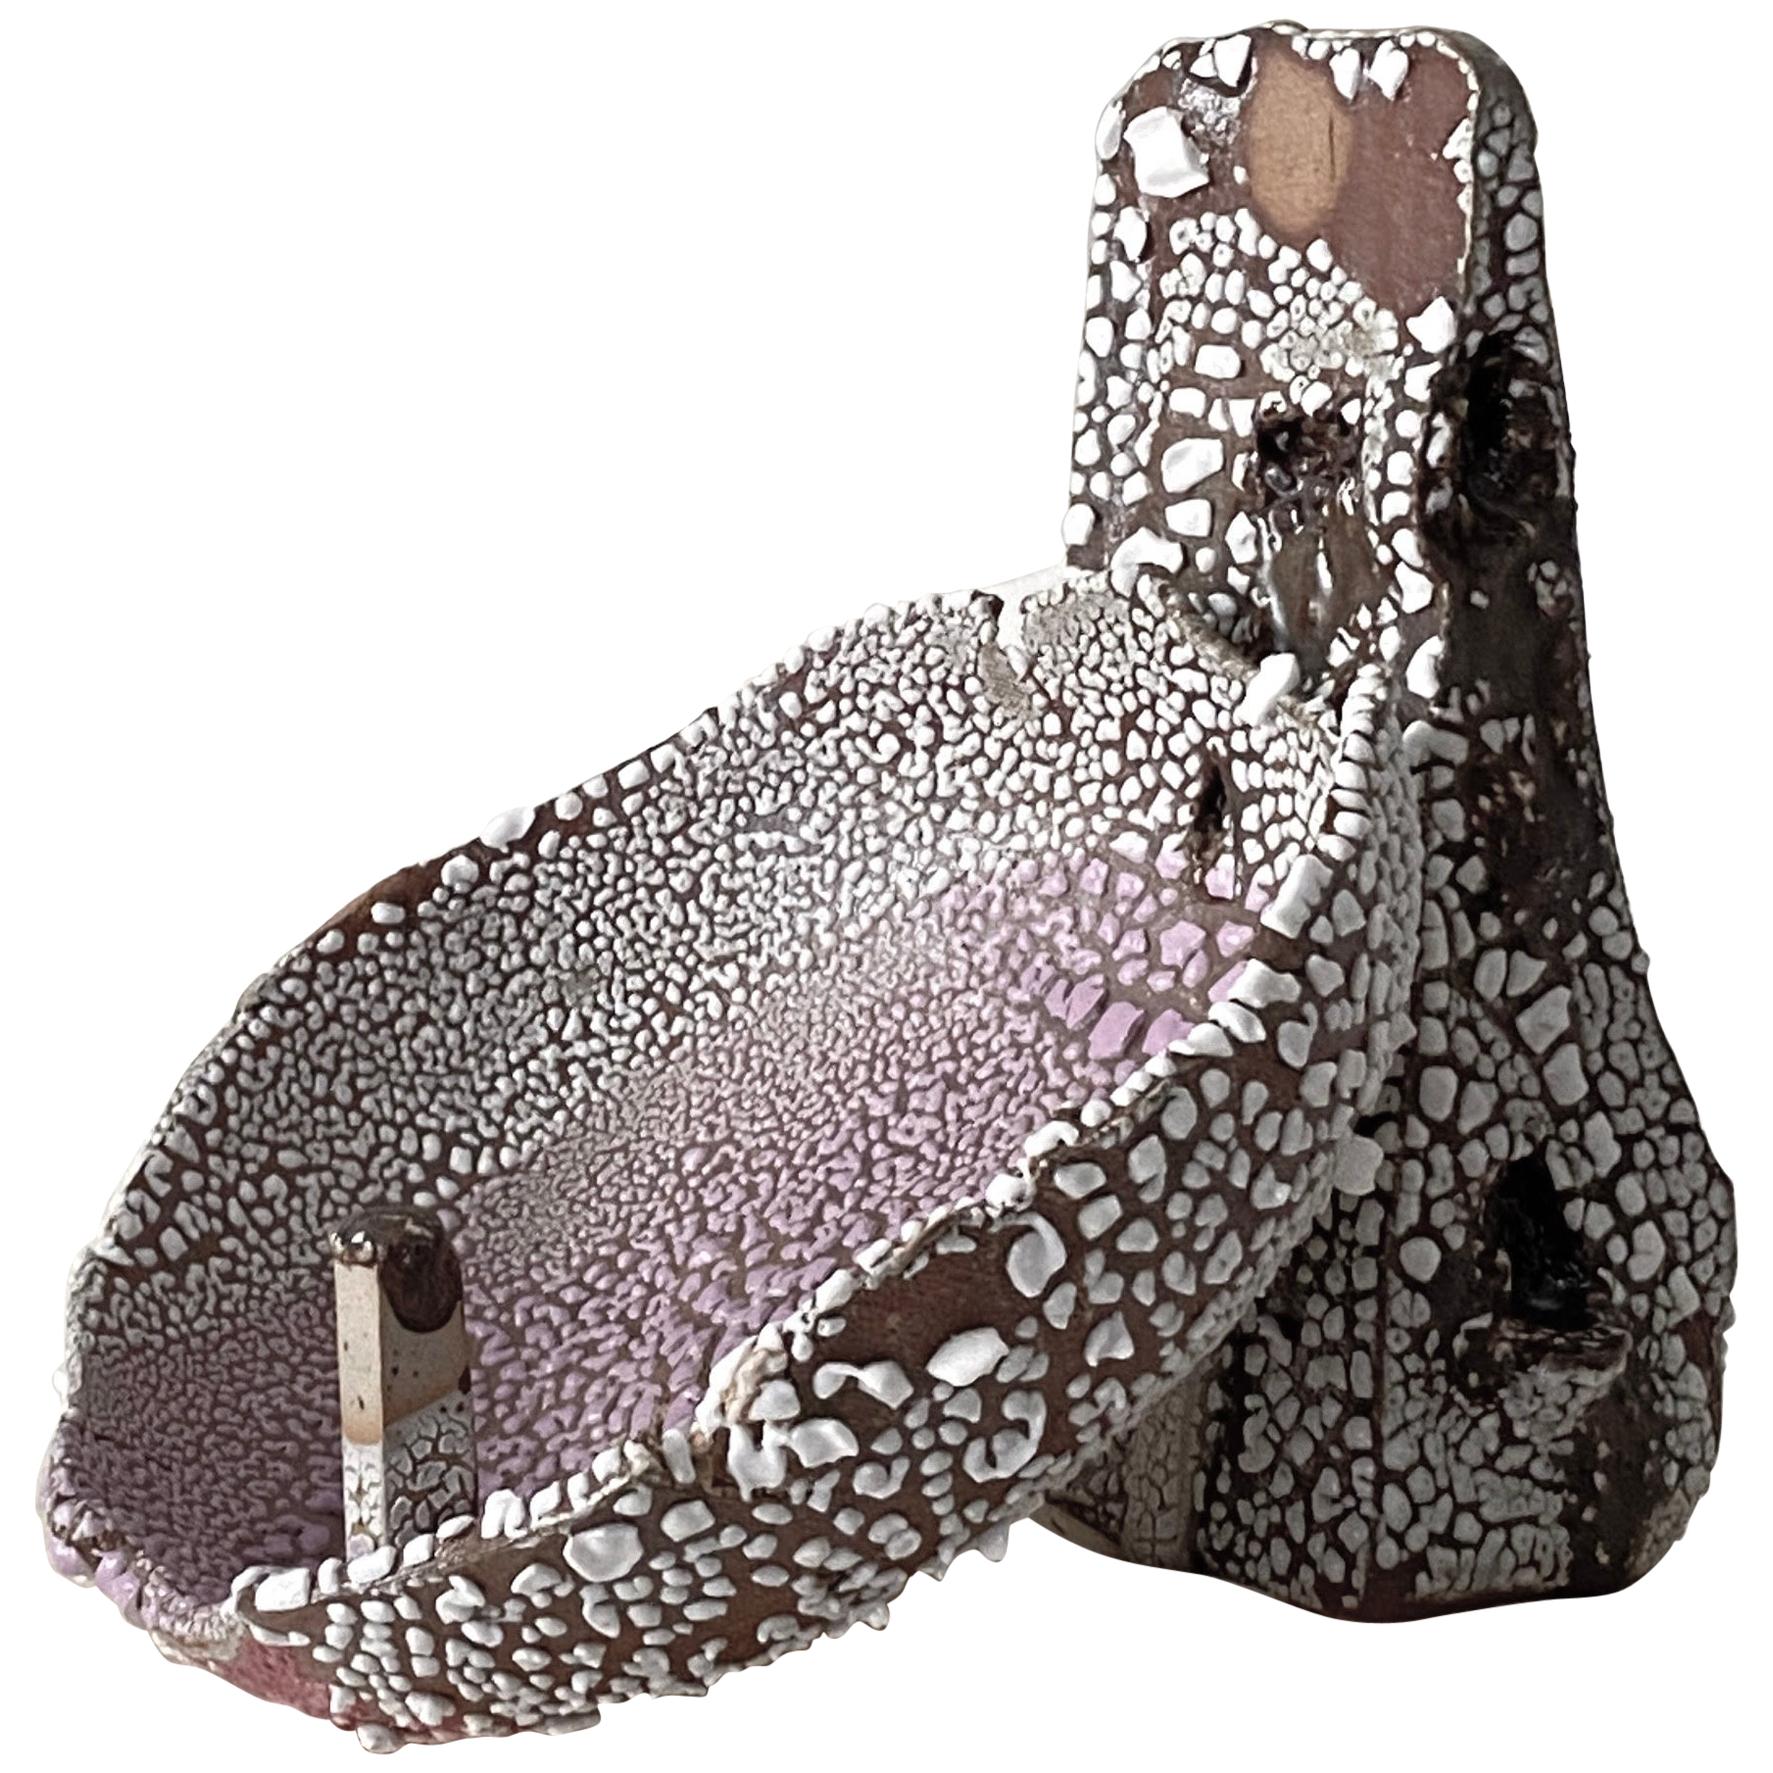 Ceto-Vase von Lava Studio Ceramics